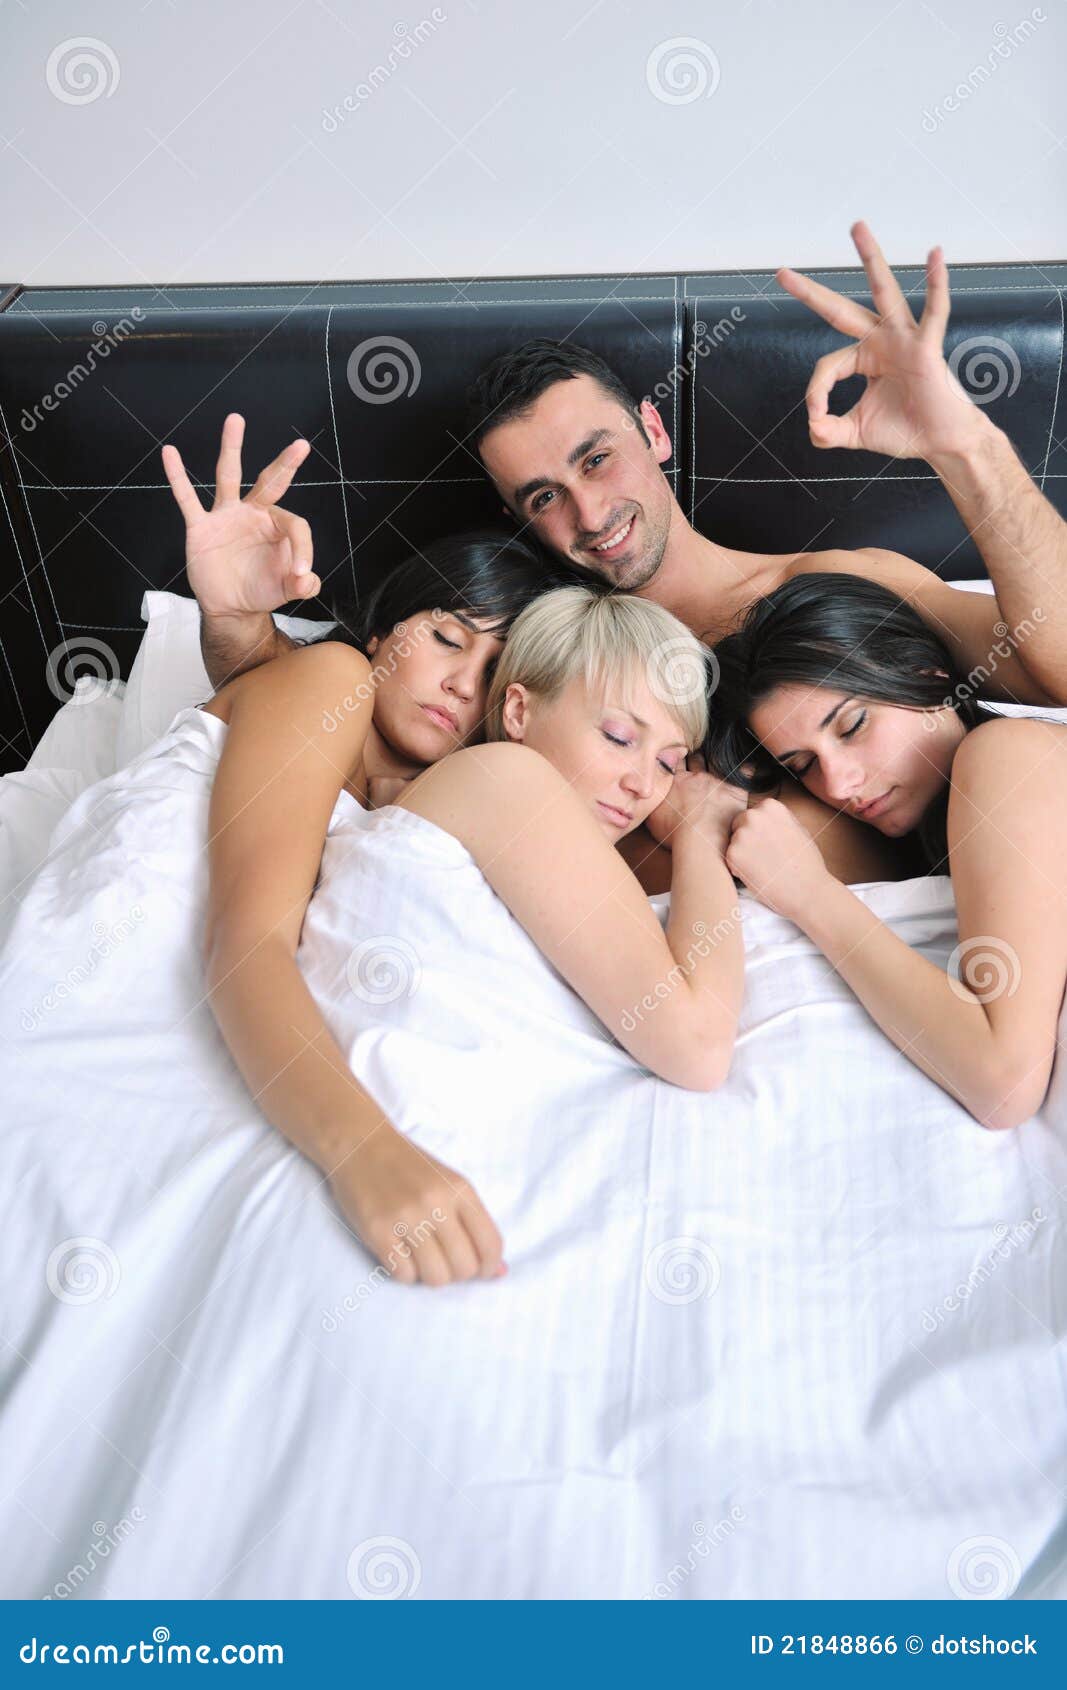 Один мужик несколько баб. Трое людей в постели. Три человека в постели. Две девушки и парень в постели. Девушка и три мужчины в постели.